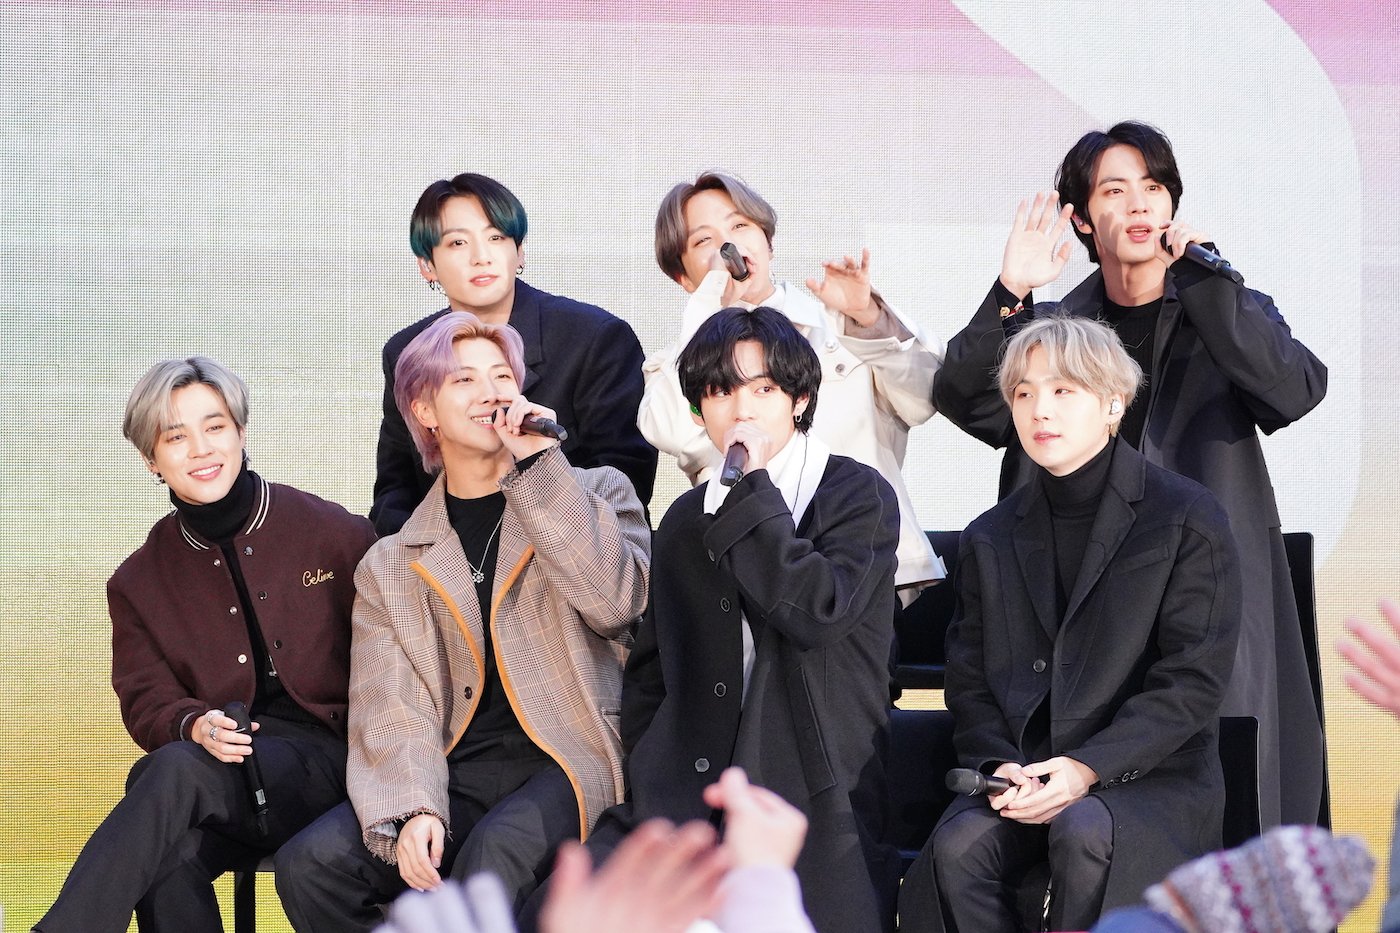 J-Hope, SUGA, Jungkook, Jimin, RM, V, and Jin of the K-pop band BTS